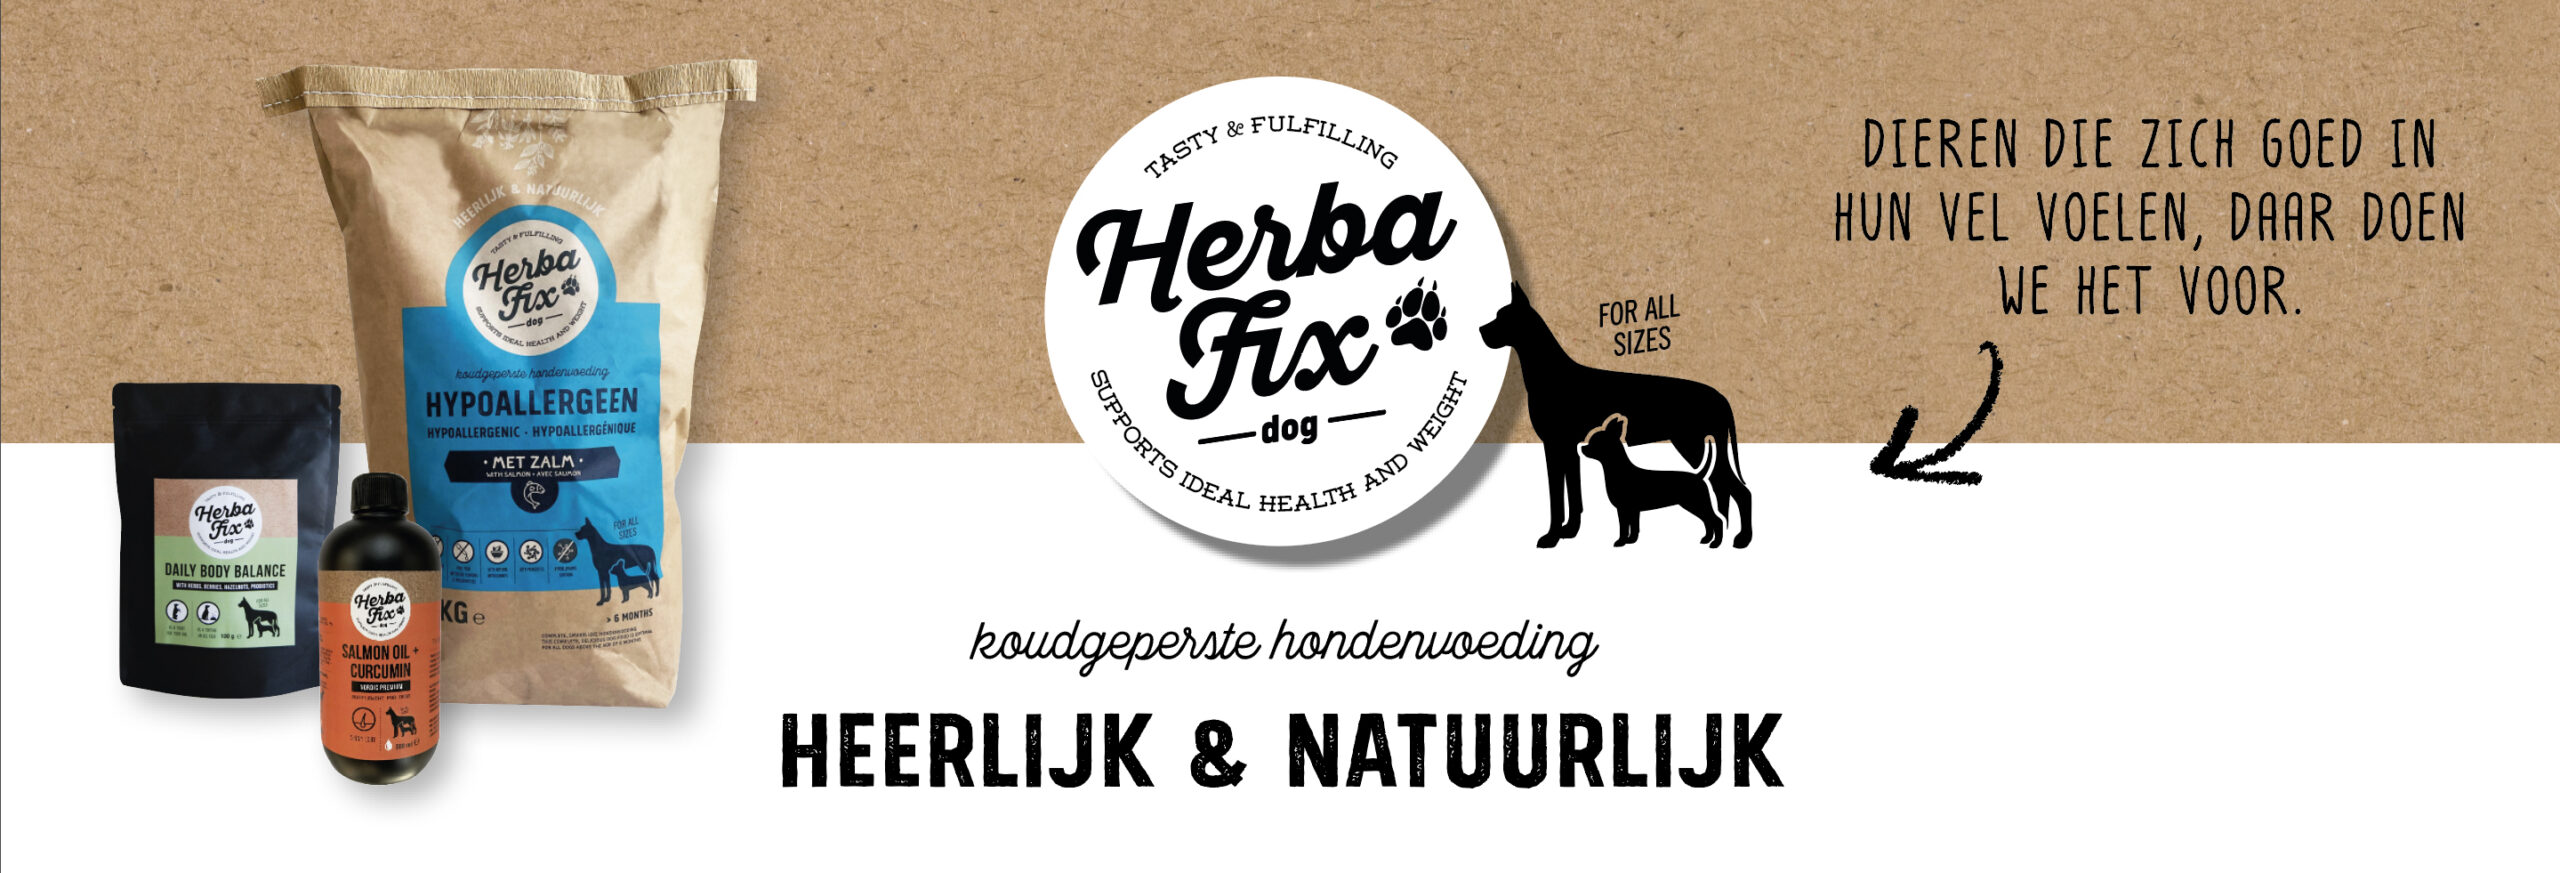 HerbaFix natuurlijke hondenvoeding